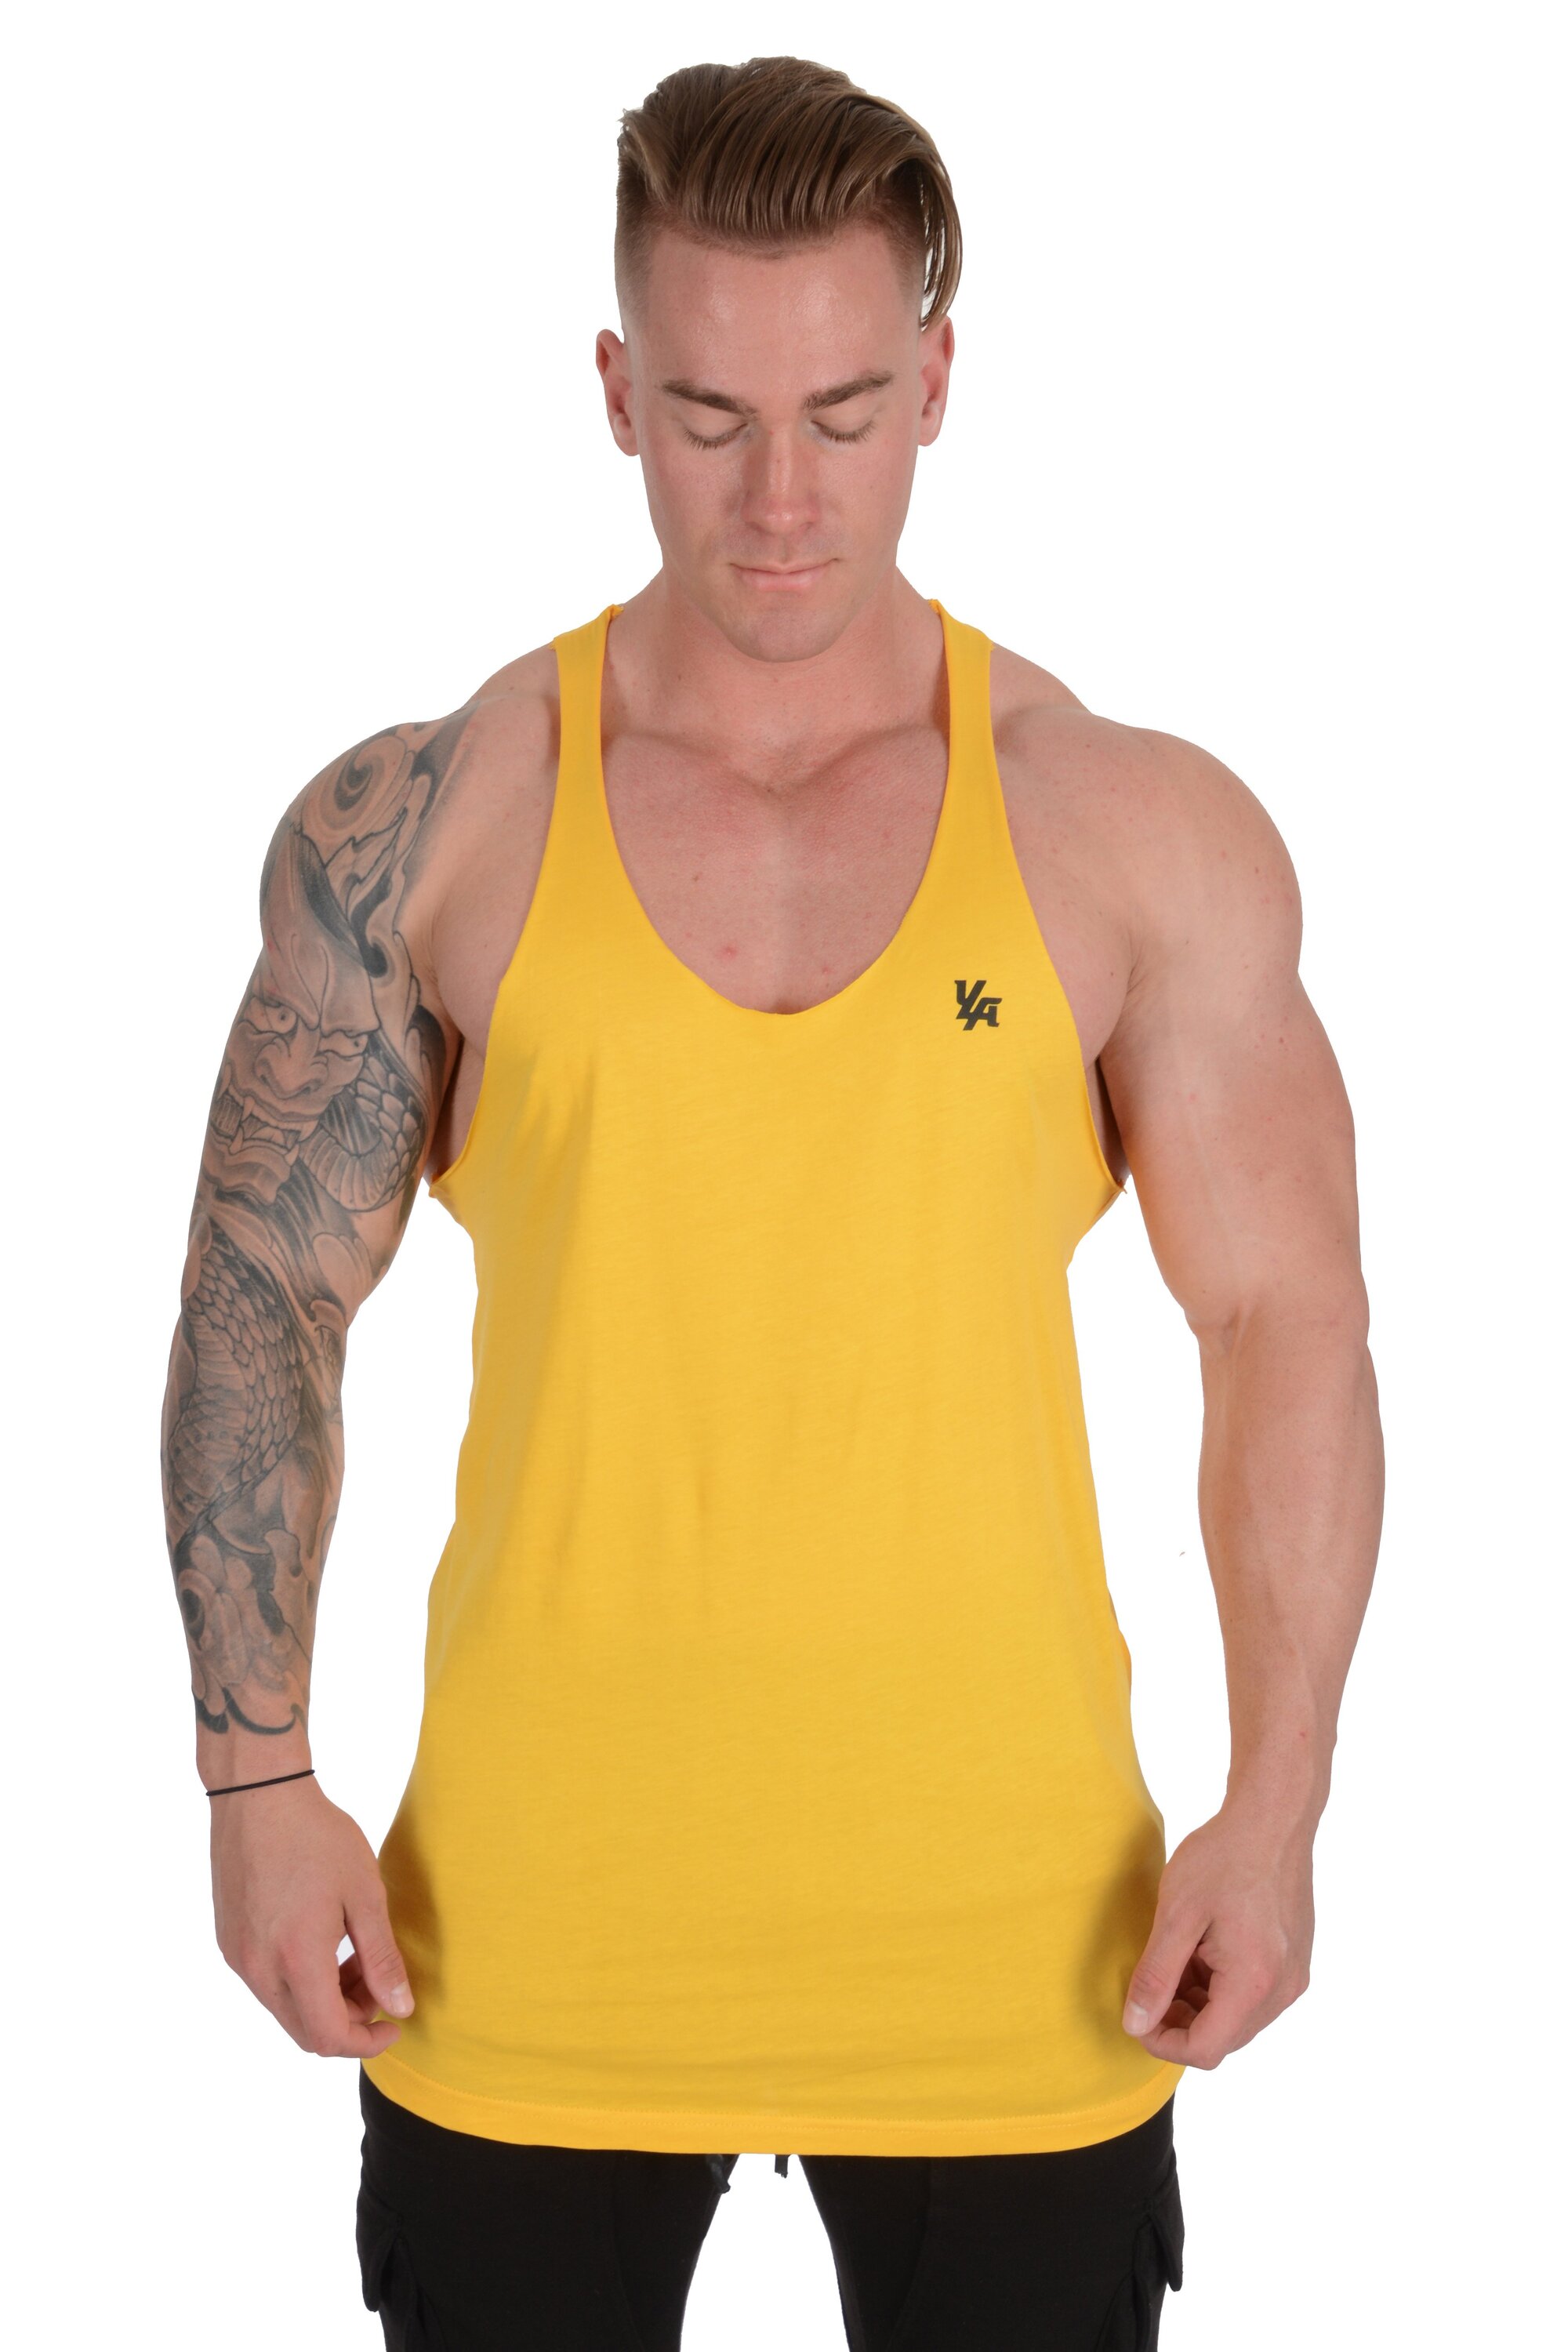 Buy YoungLA Long Tank Tops Men Muscle Shirt Gym Training 306